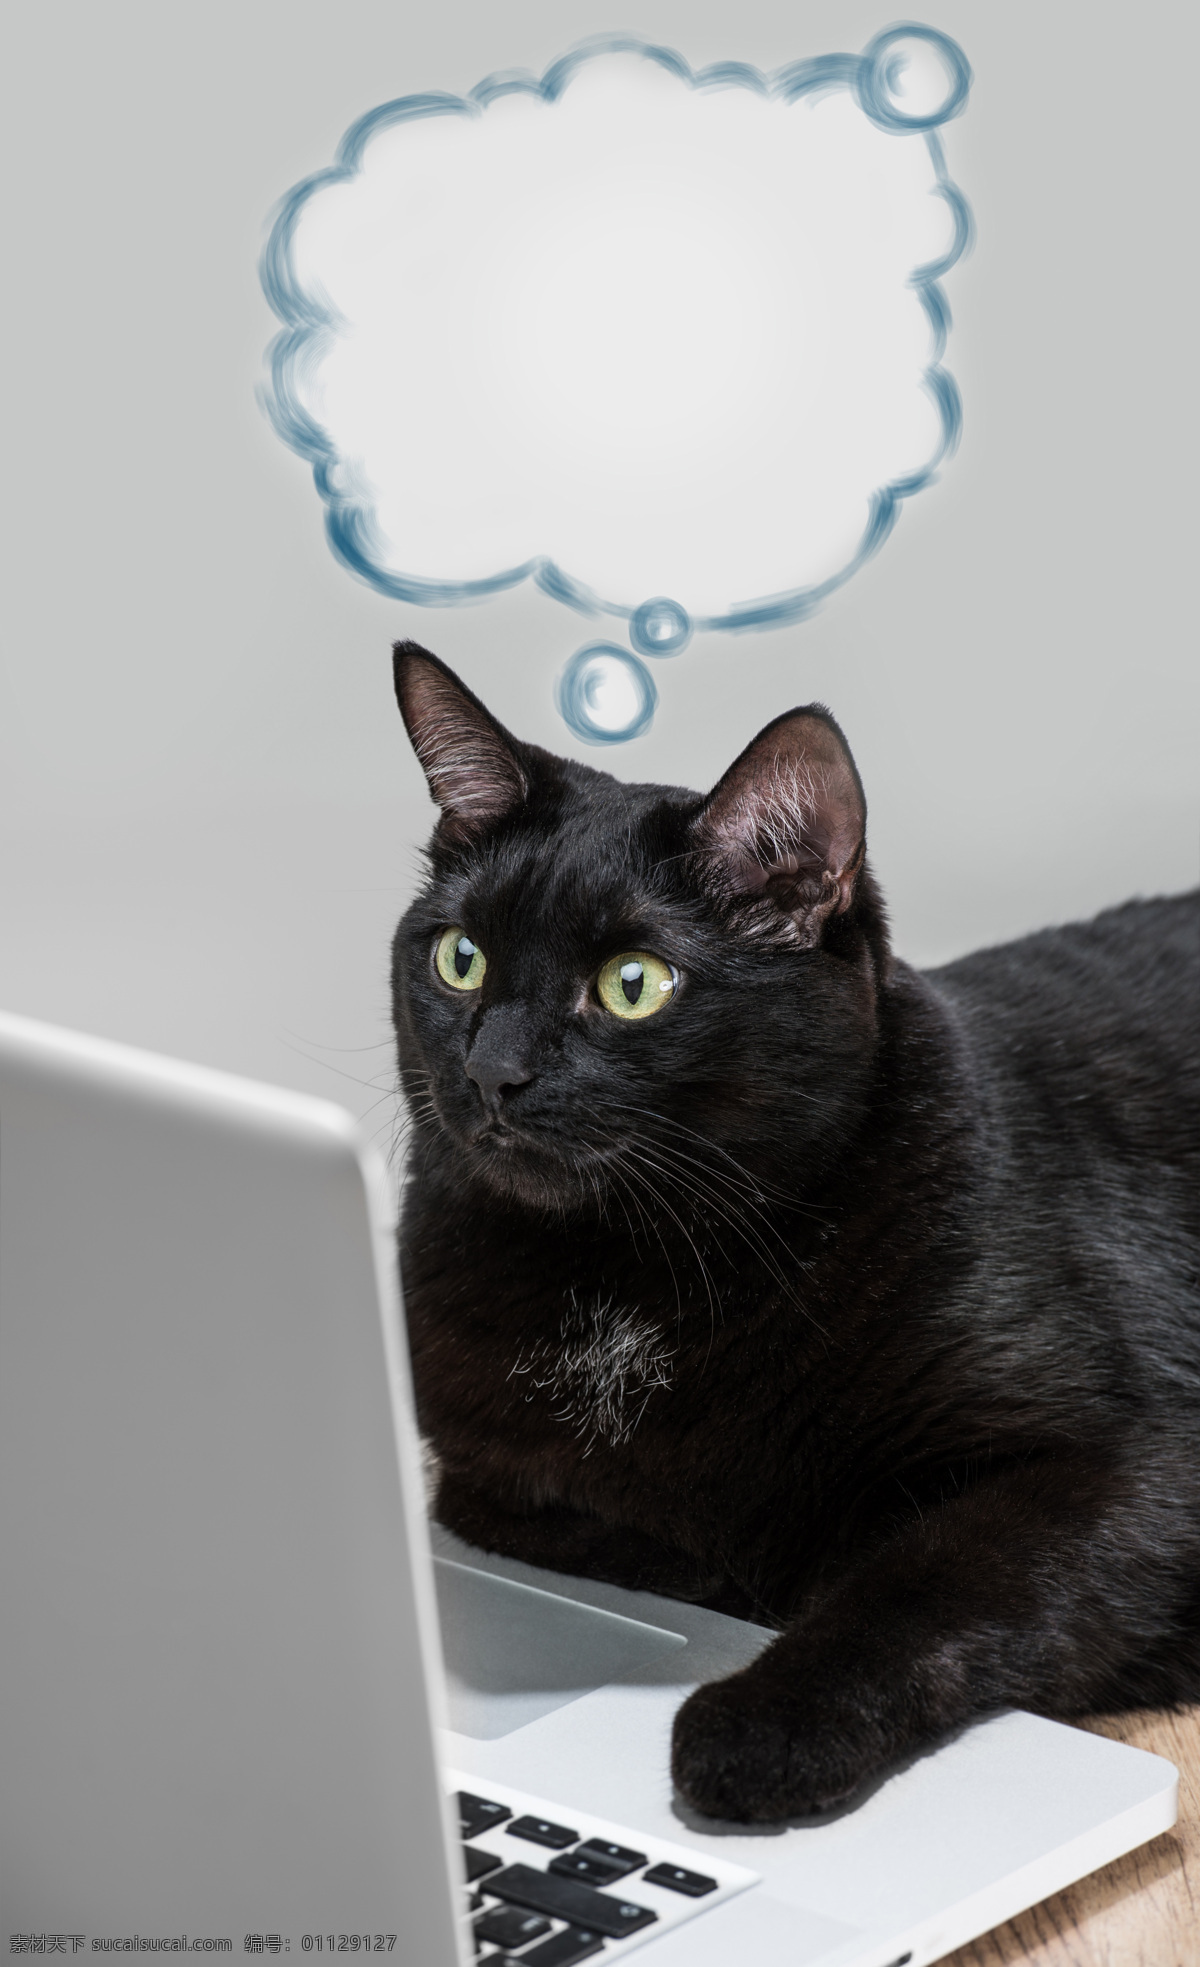 可爱 黑猫 笔记本 电脑 笔记本电脑 猫 小猫 宠物猫 可爱动物 动物世界 猫咪图片 生物世界